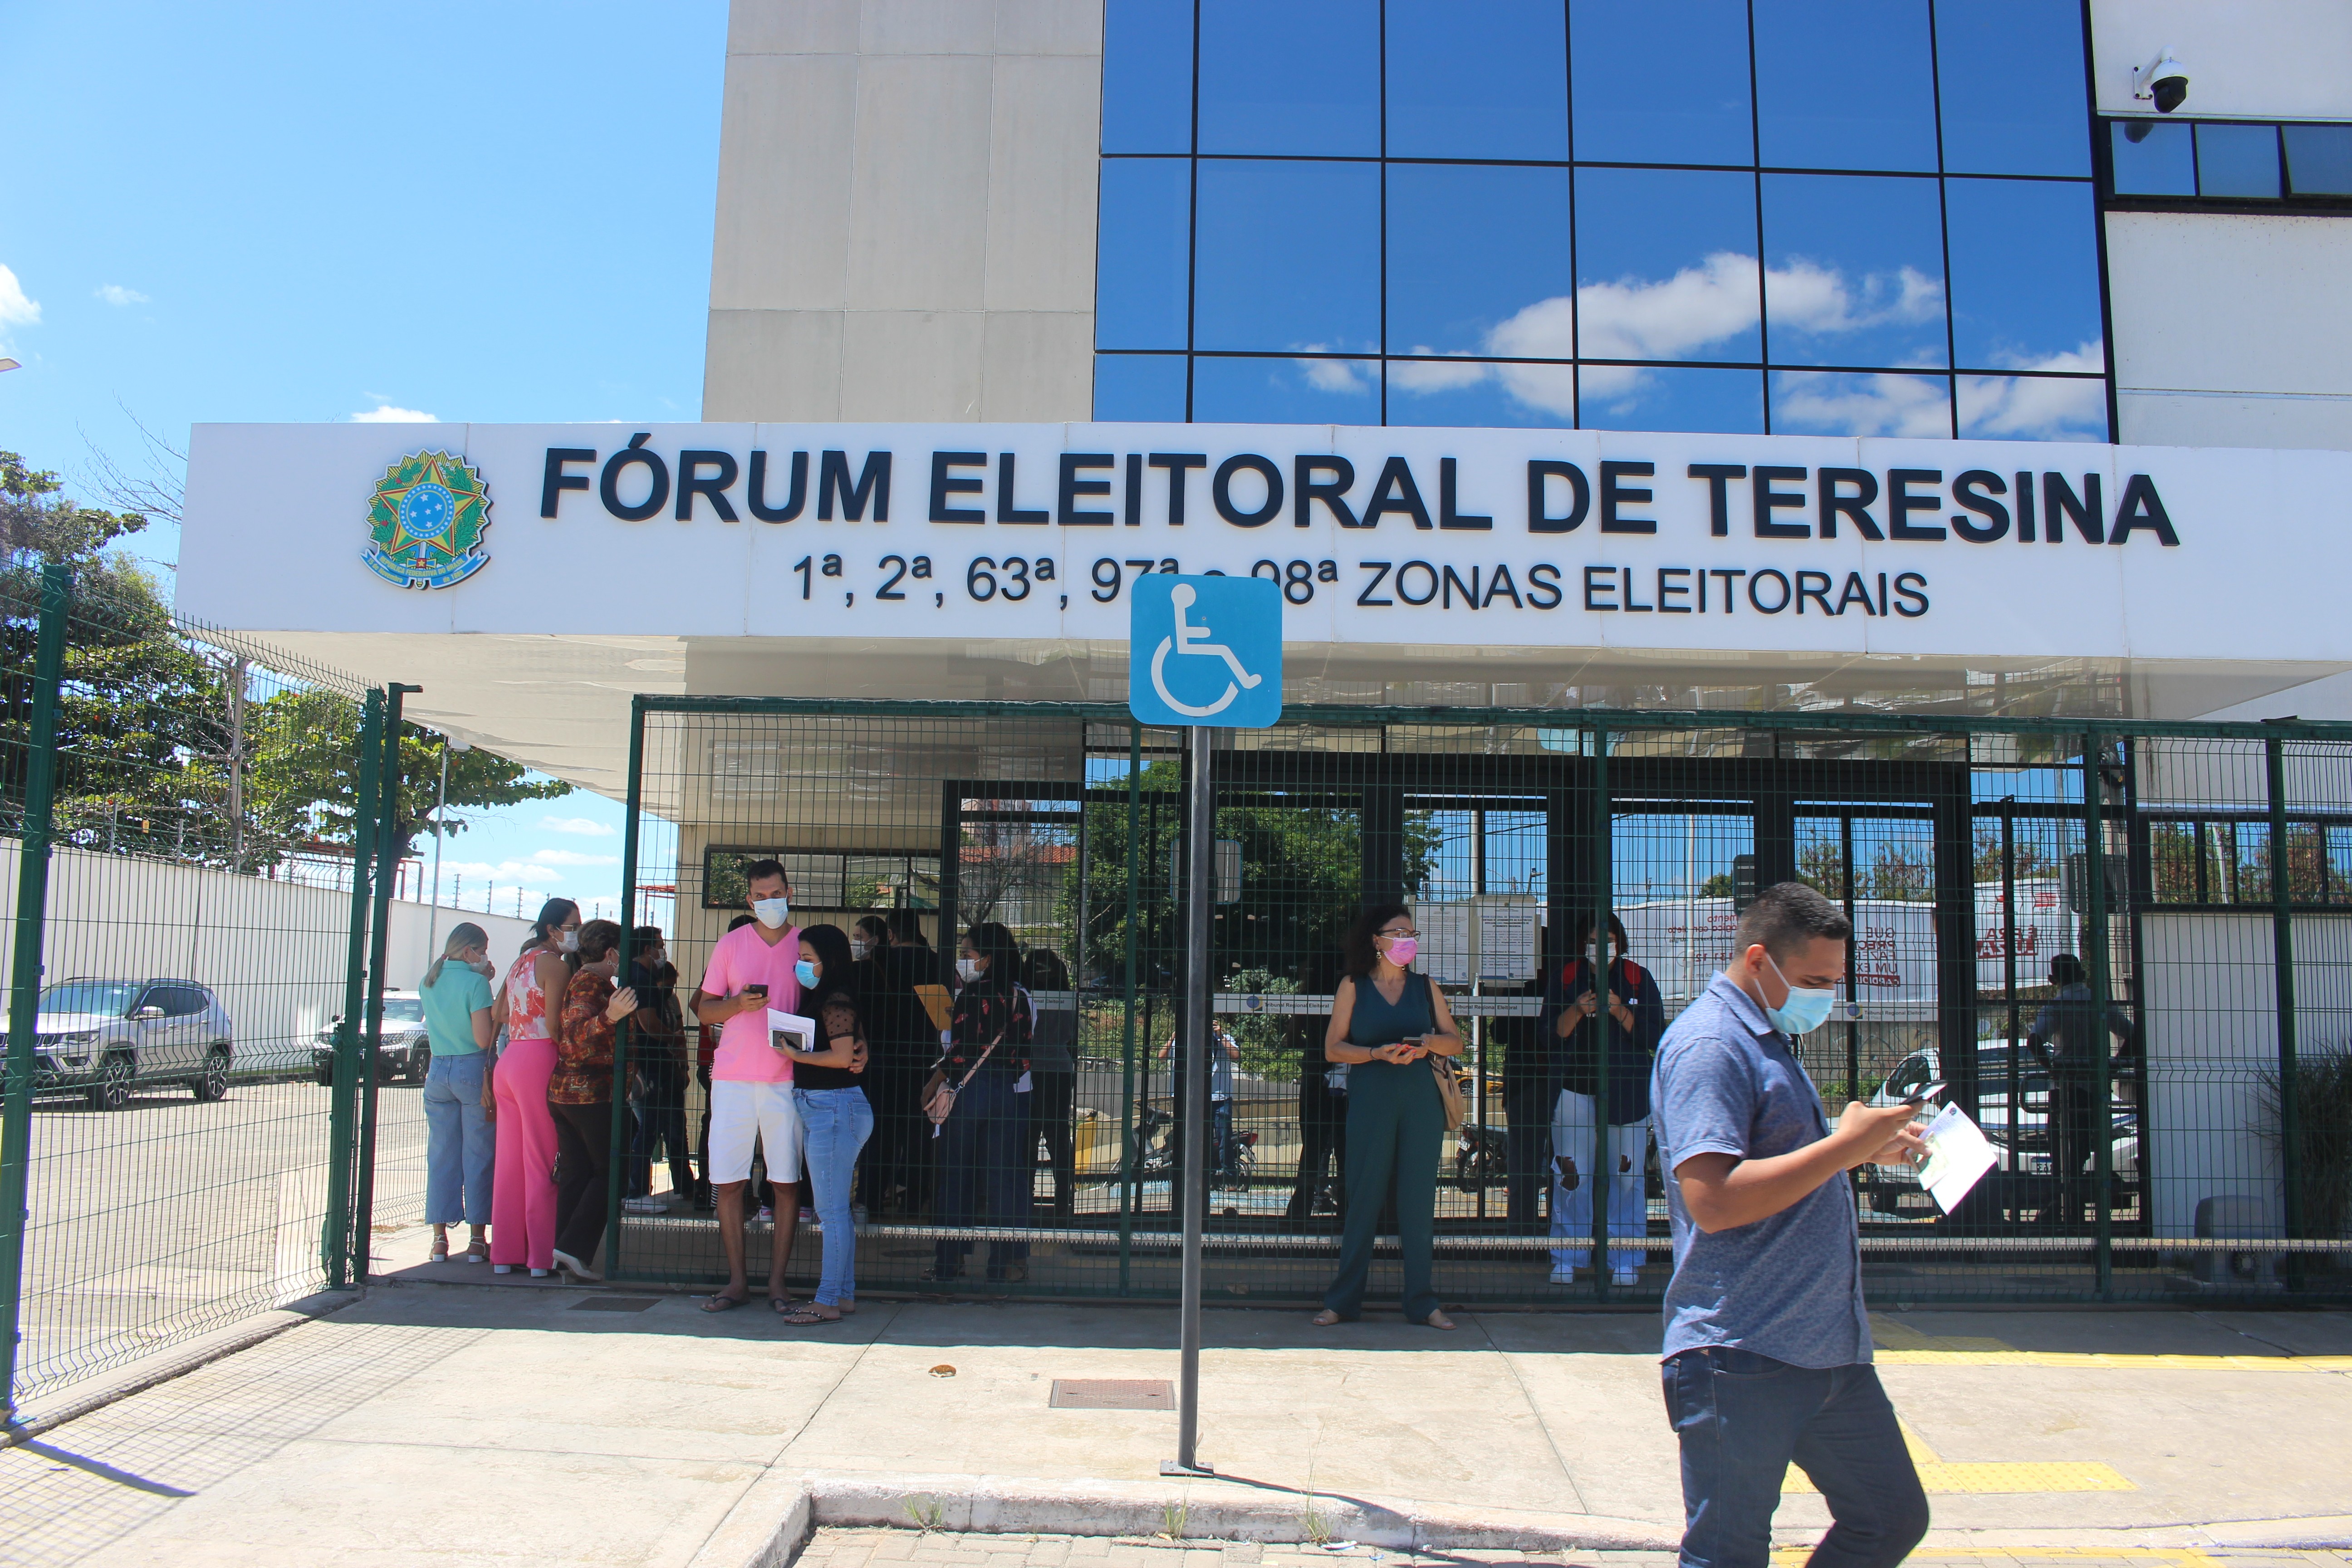 Eleitores ‘correm’ no último dia para solicitação do voto em trânsito em Teresina